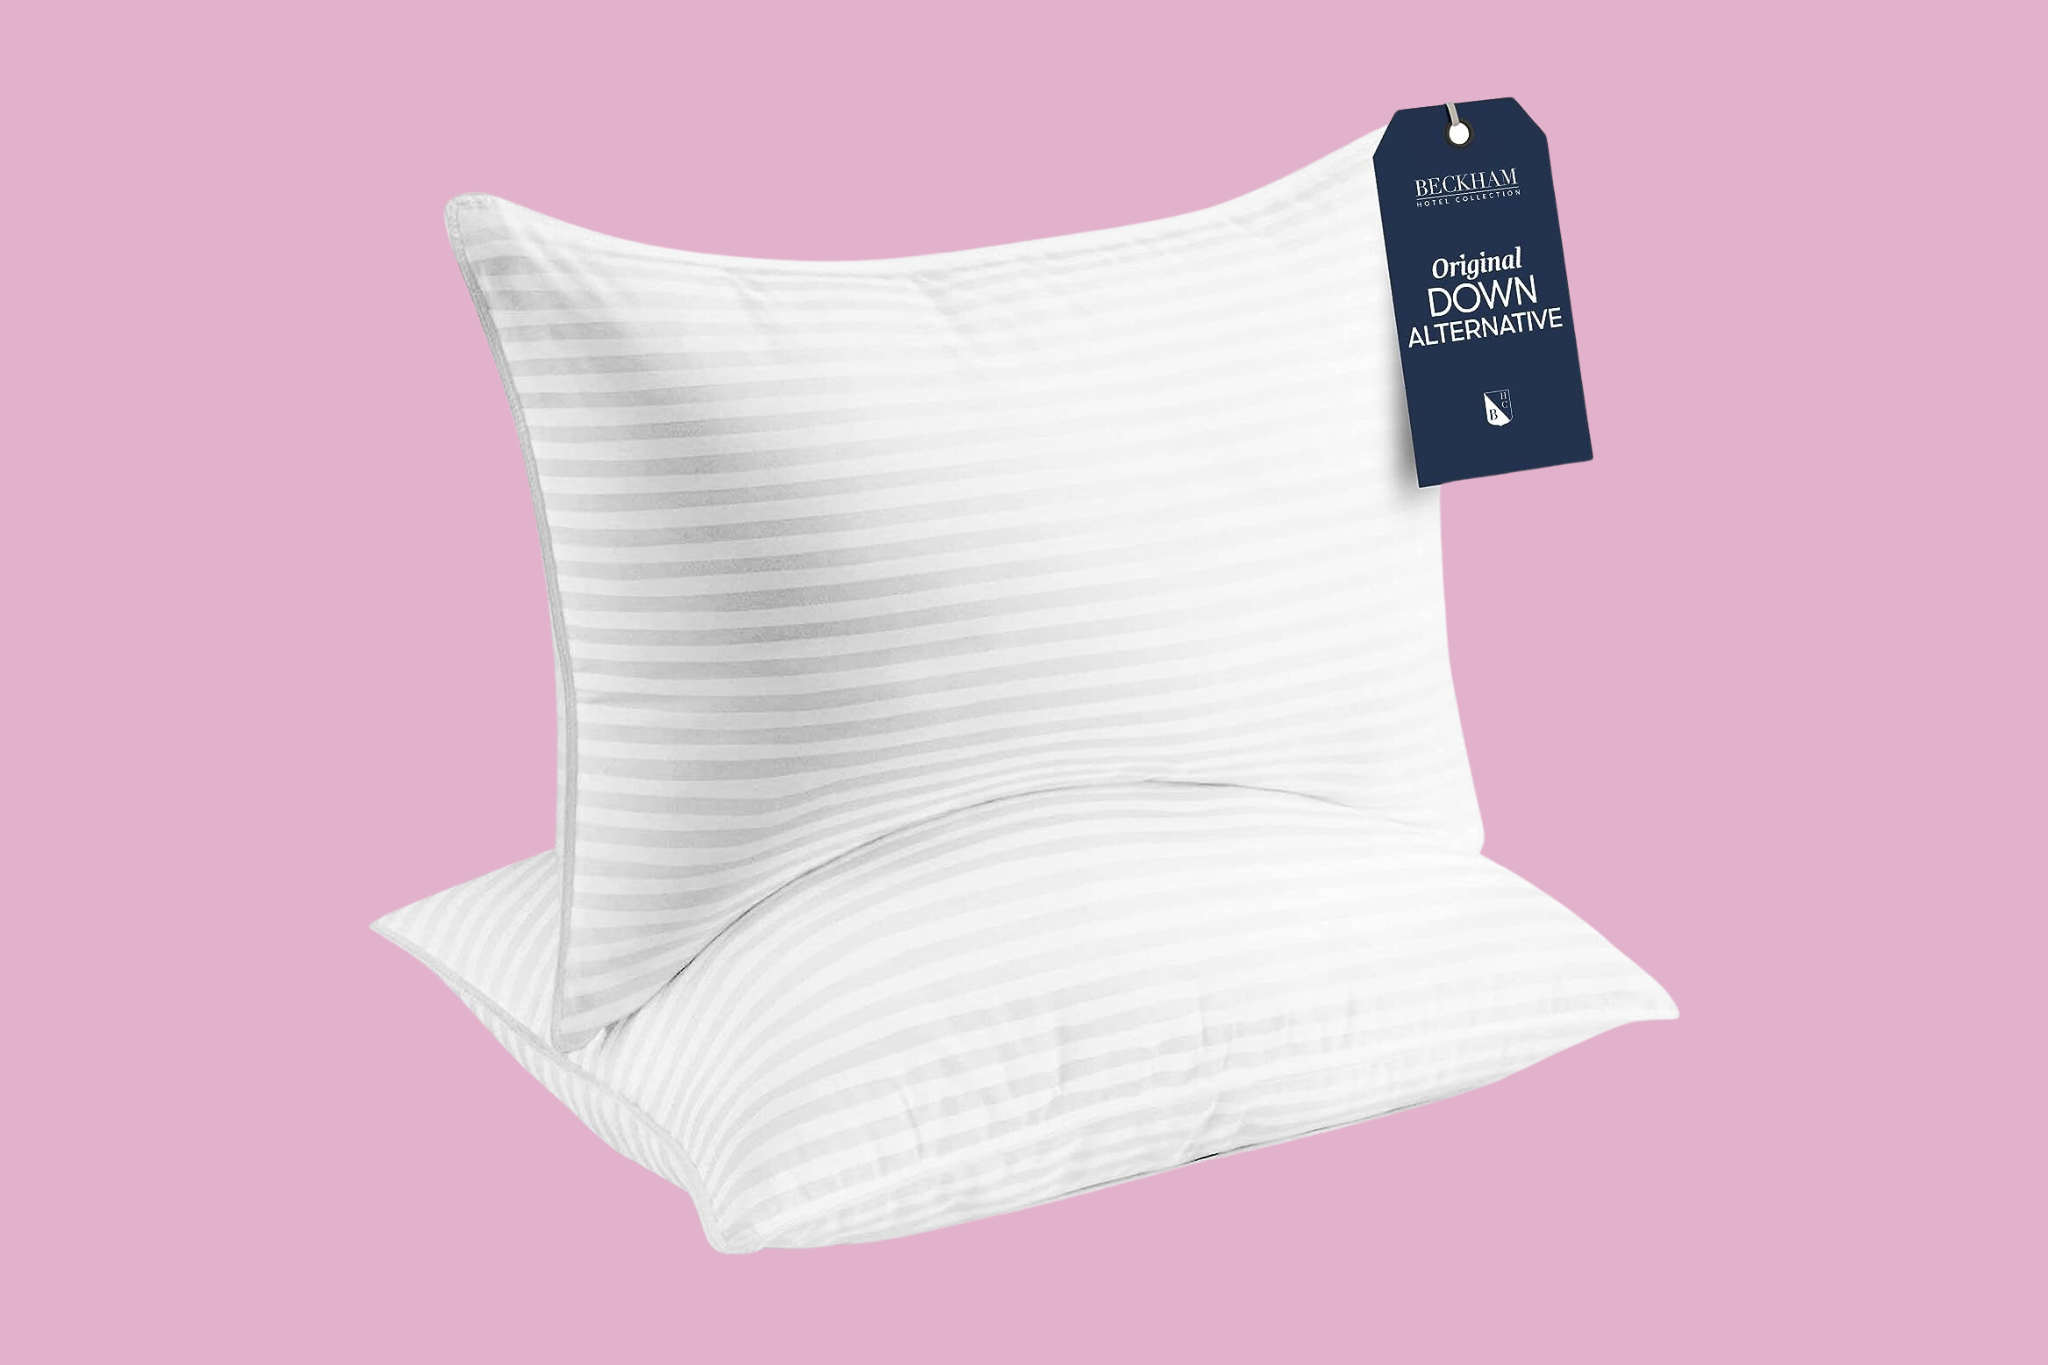 Beckham Hotel Collection Pillow